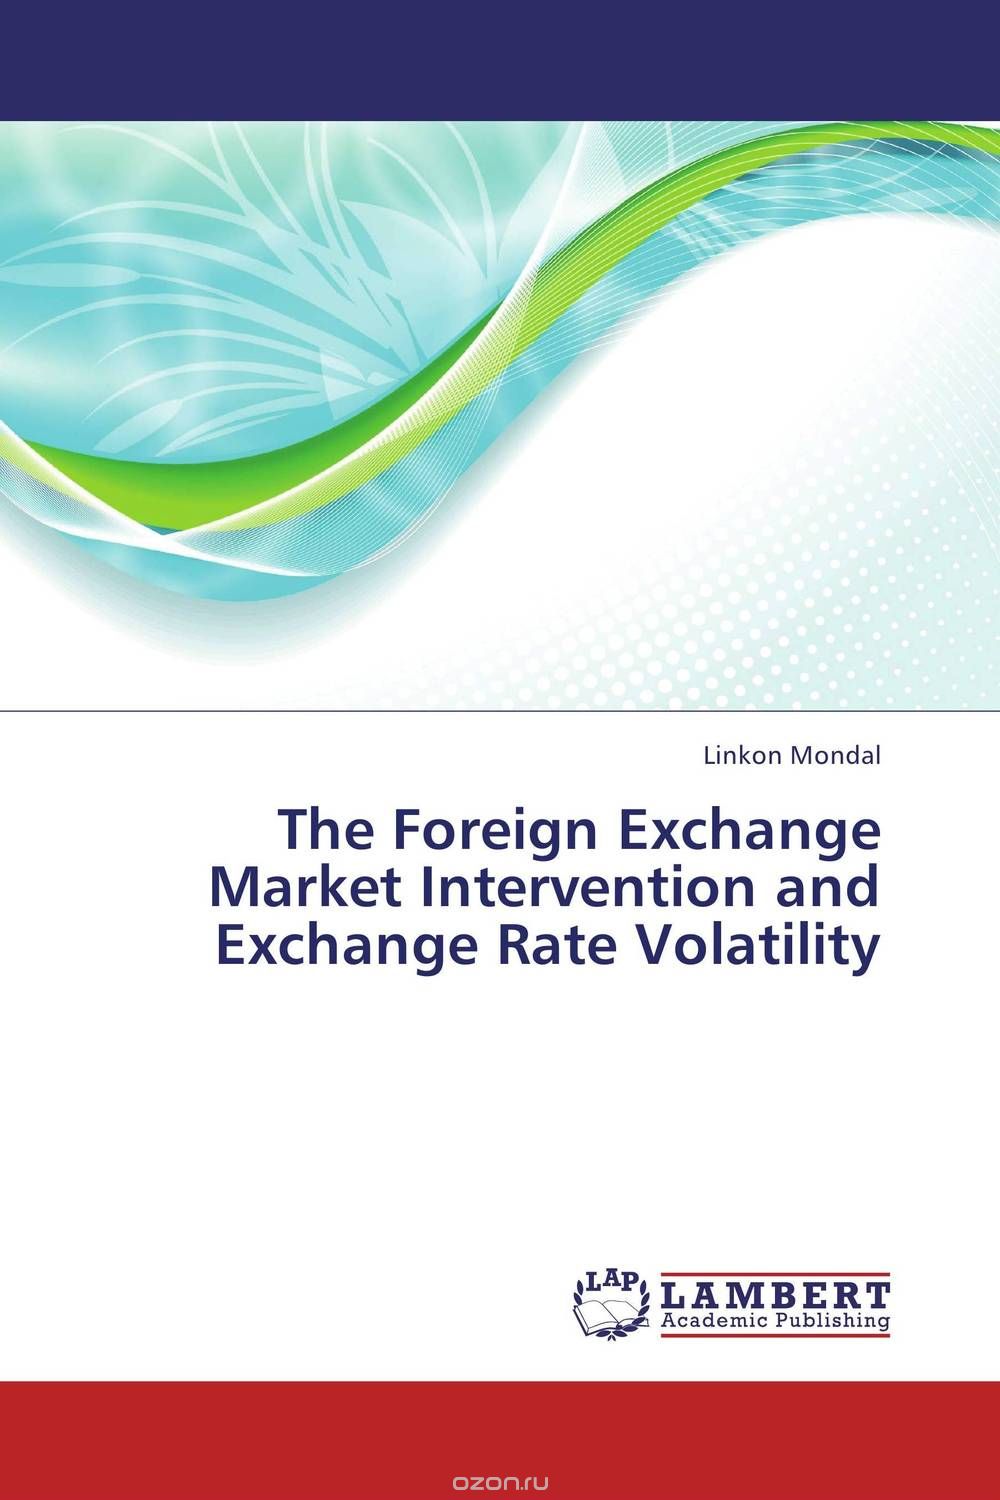 Скачать книгу "The Foreign Exchange Market Intervention and Exchange Rate Volatility"